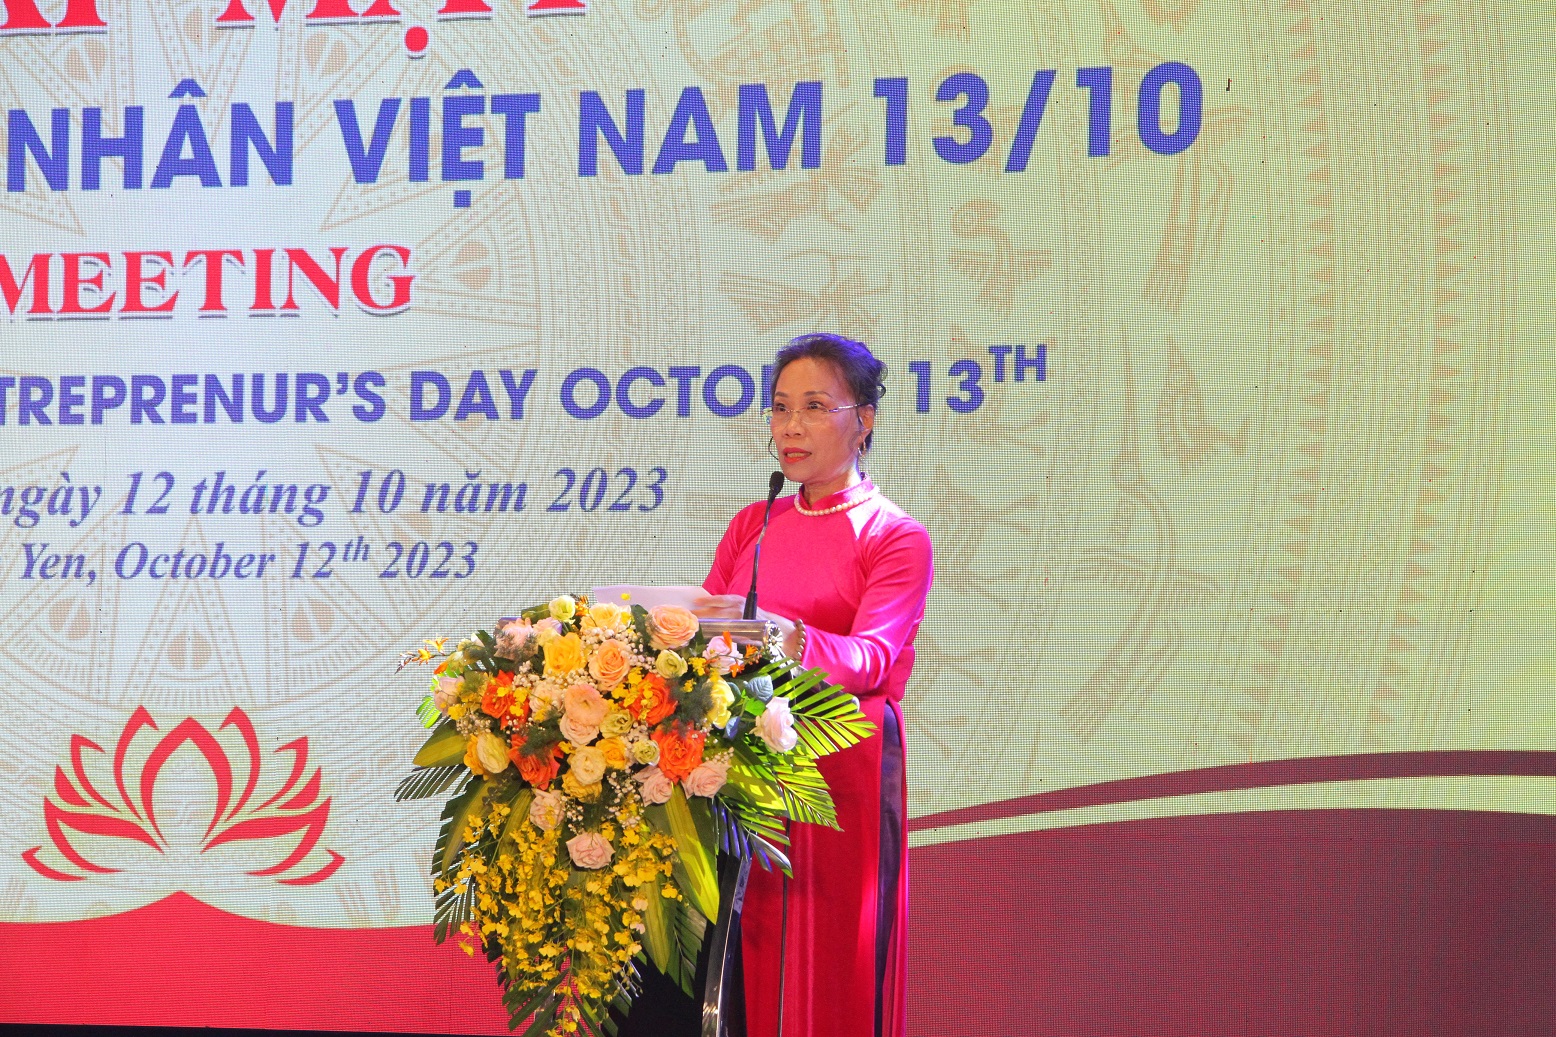 Bà Phạm Thị Hồng Thủy, Chủ tịch Hiệp hội Doanh nghiệp tỉnh Vĩnh Phúc phát biểu khai mạc hội nghị